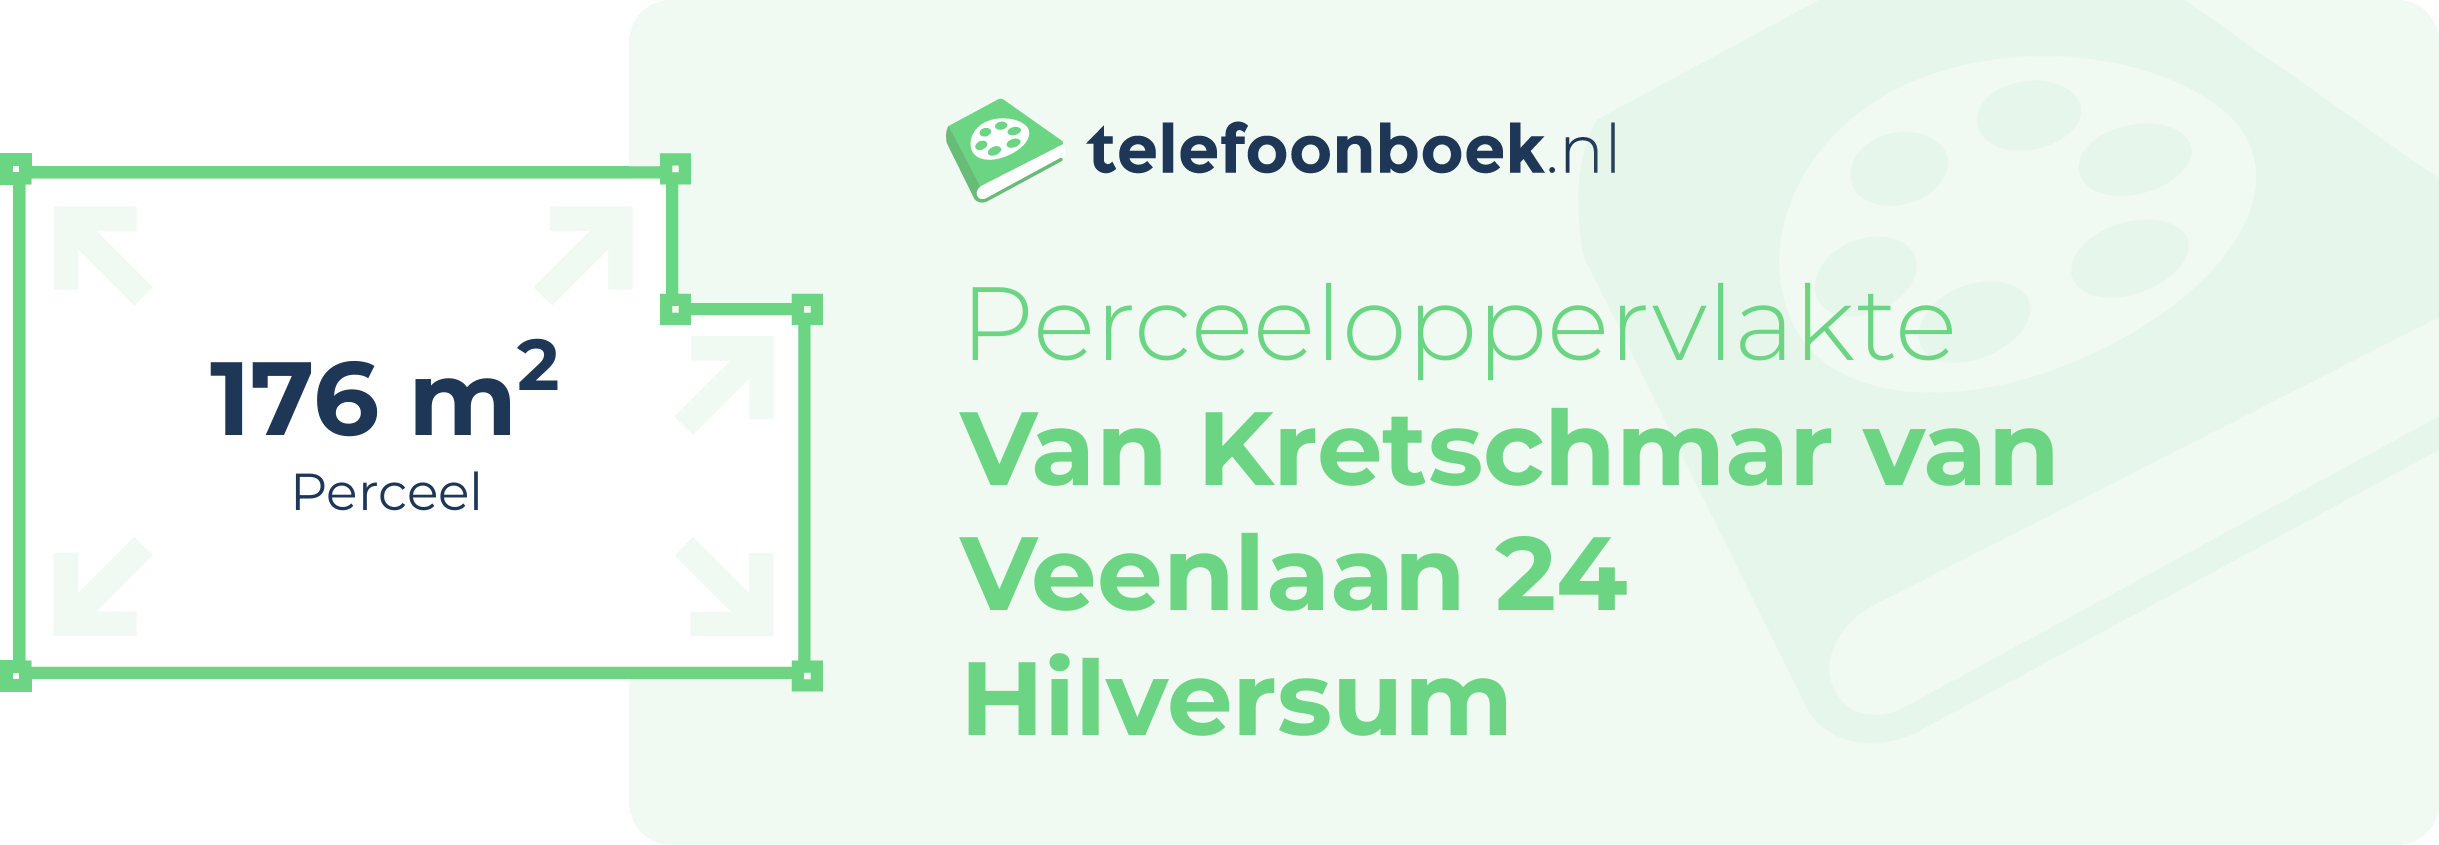 Perceeloppervlakte Van Kretschmar Van Veenlaan 24 Hilversum